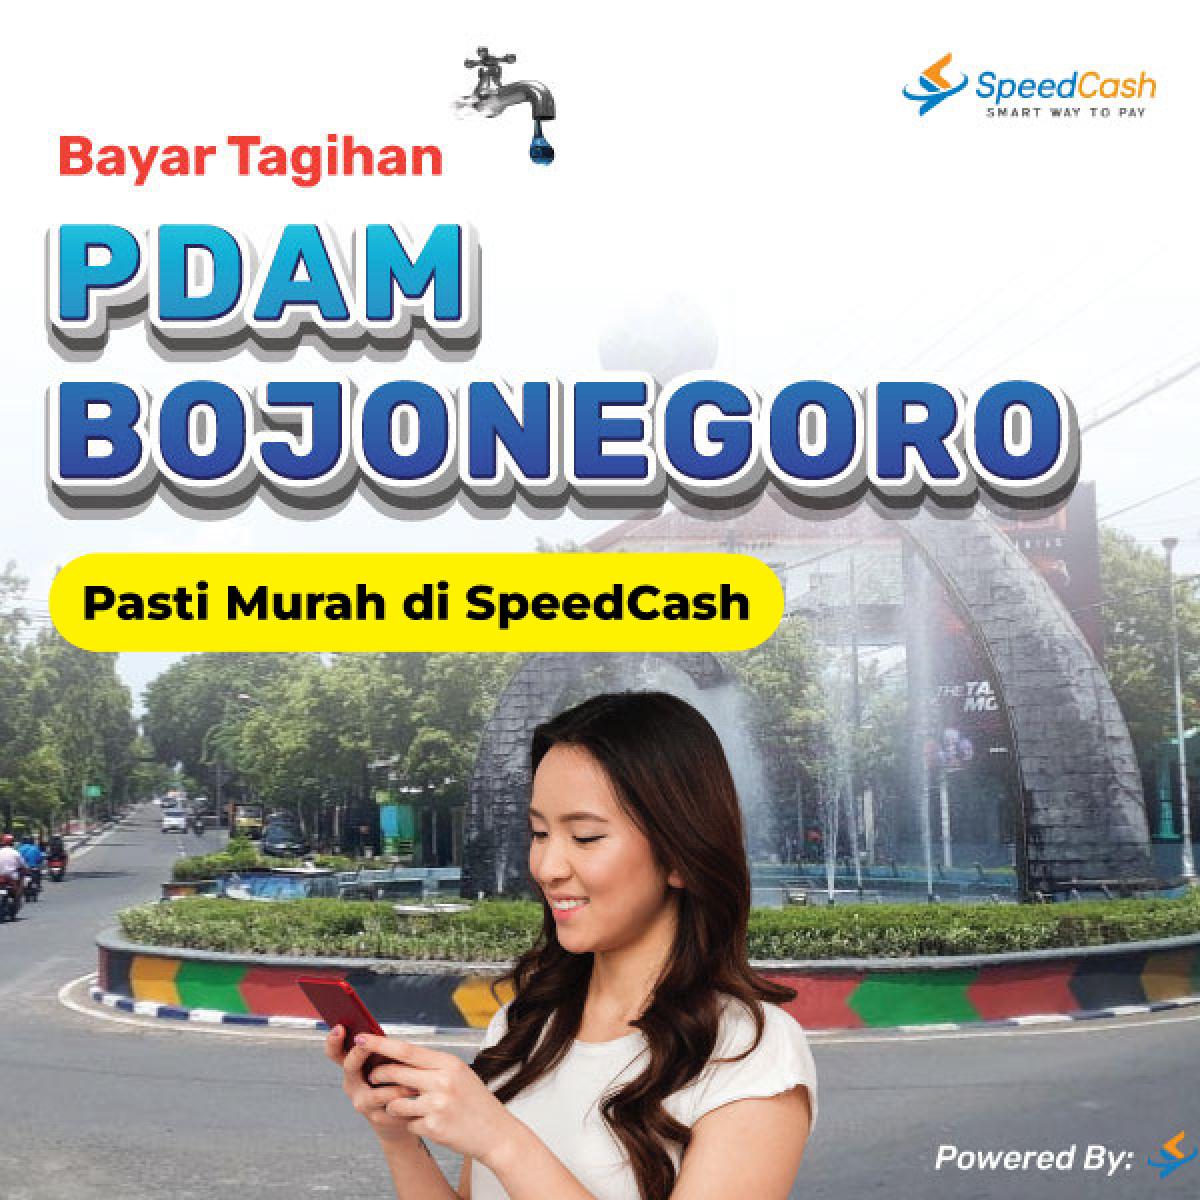 cek tagihan pdam Bojonegoro dan bayar bisa melalui online - SpeedCash